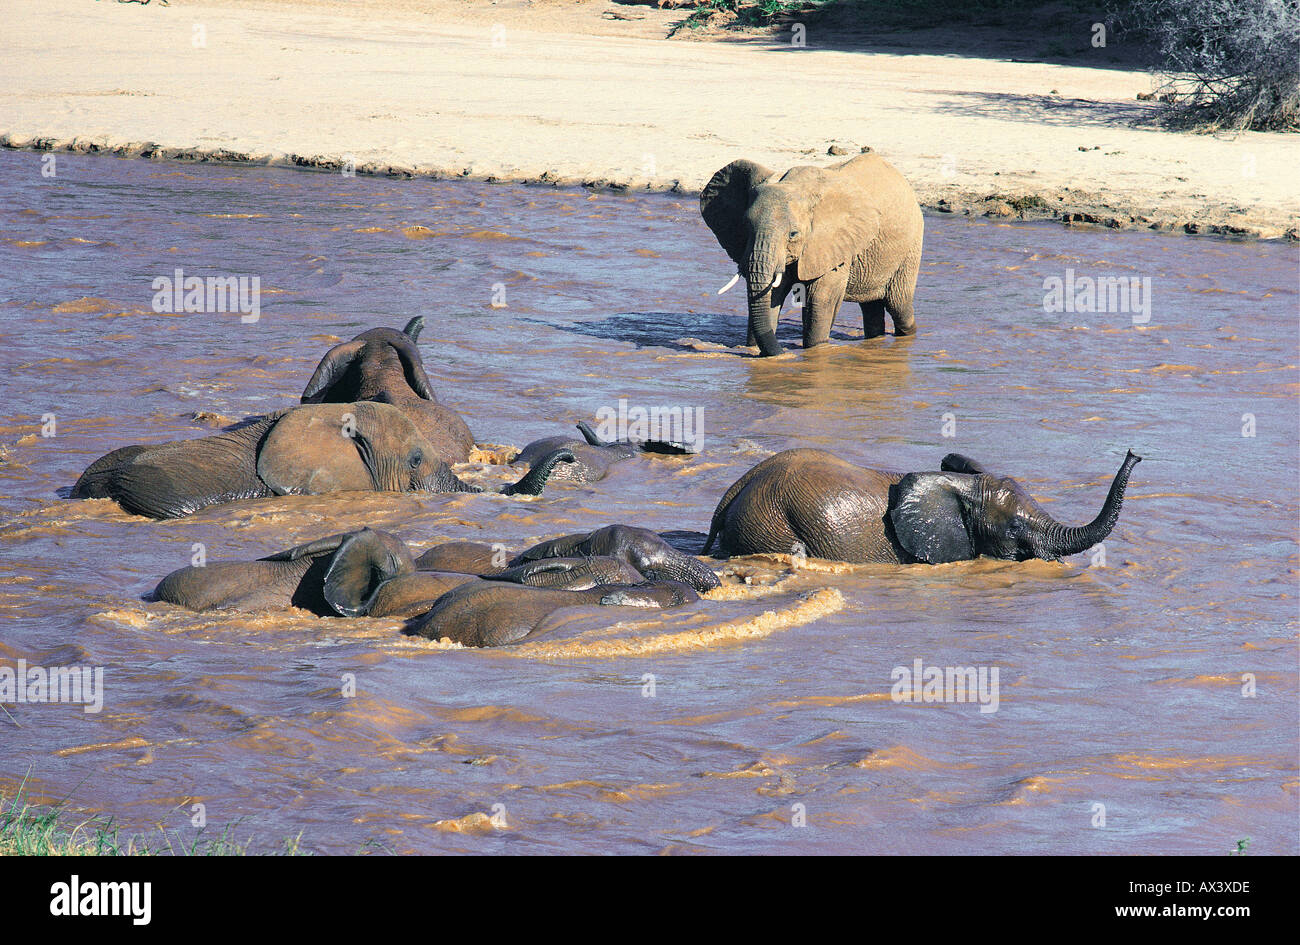 Les éléphants boire et se baigner dans l'Uaso Nyiro Réserve nationale de Samburu, Kenya Banque D'Images